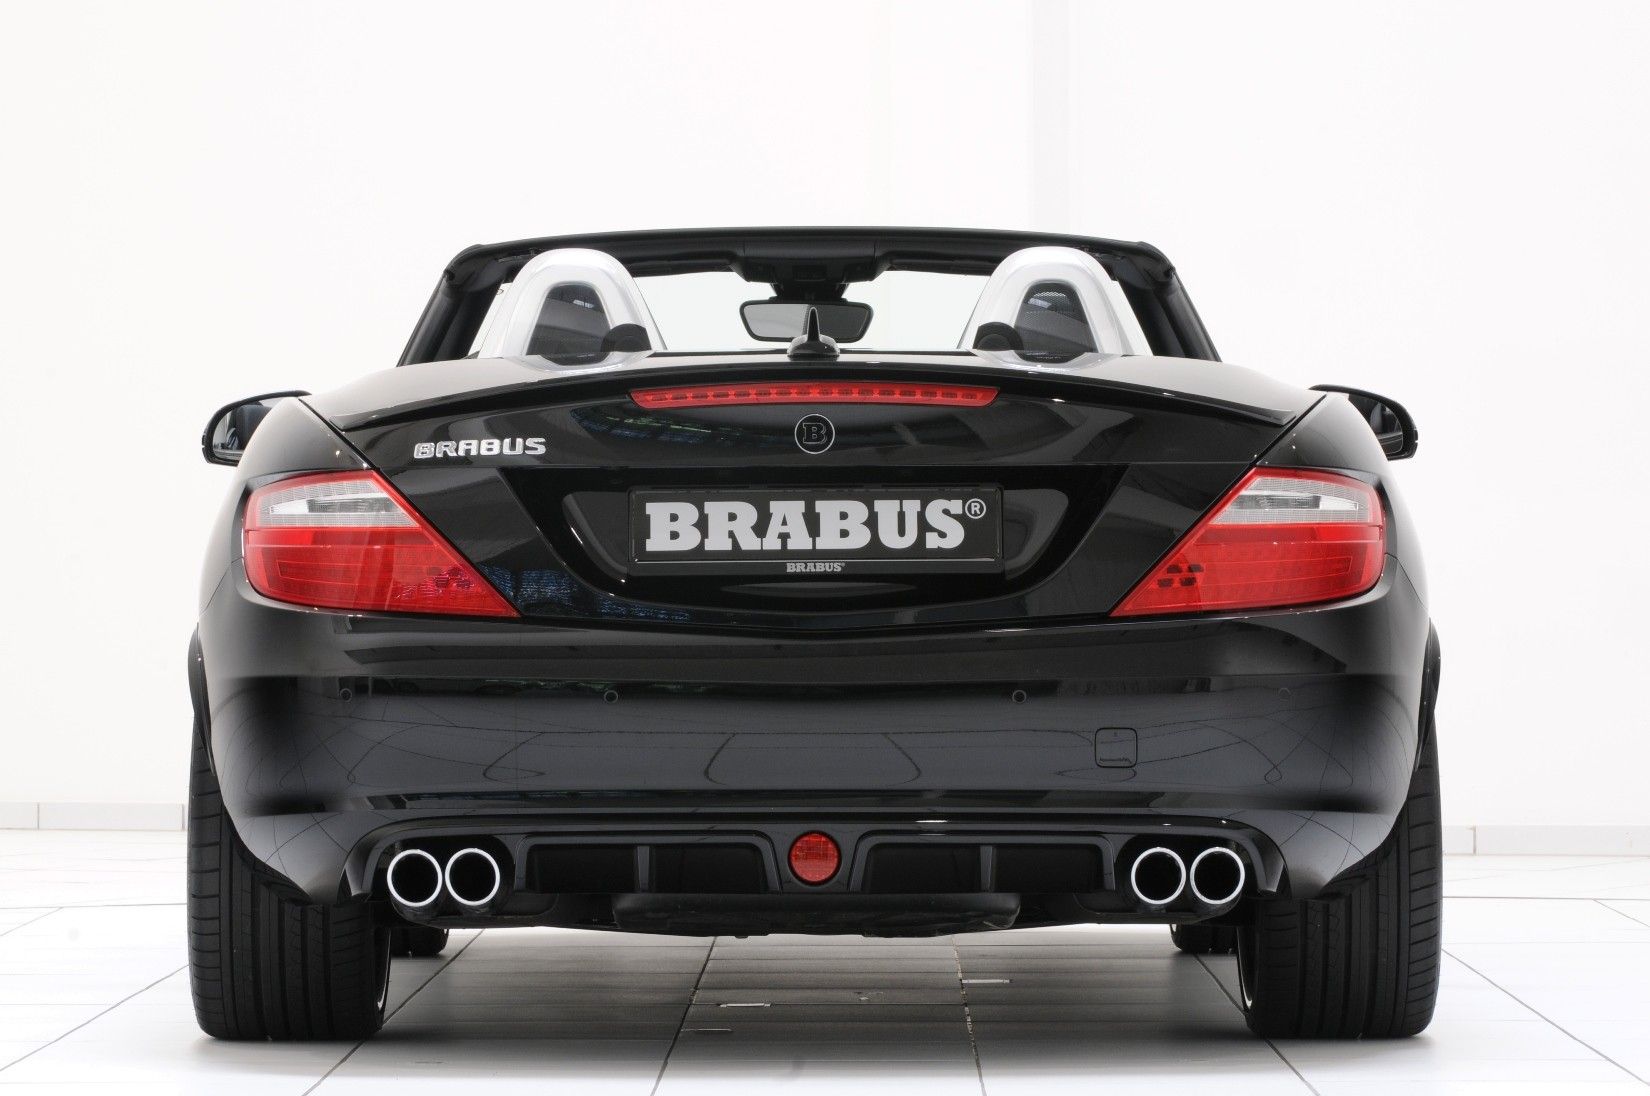 2012 Mercedes SLK by Brabus